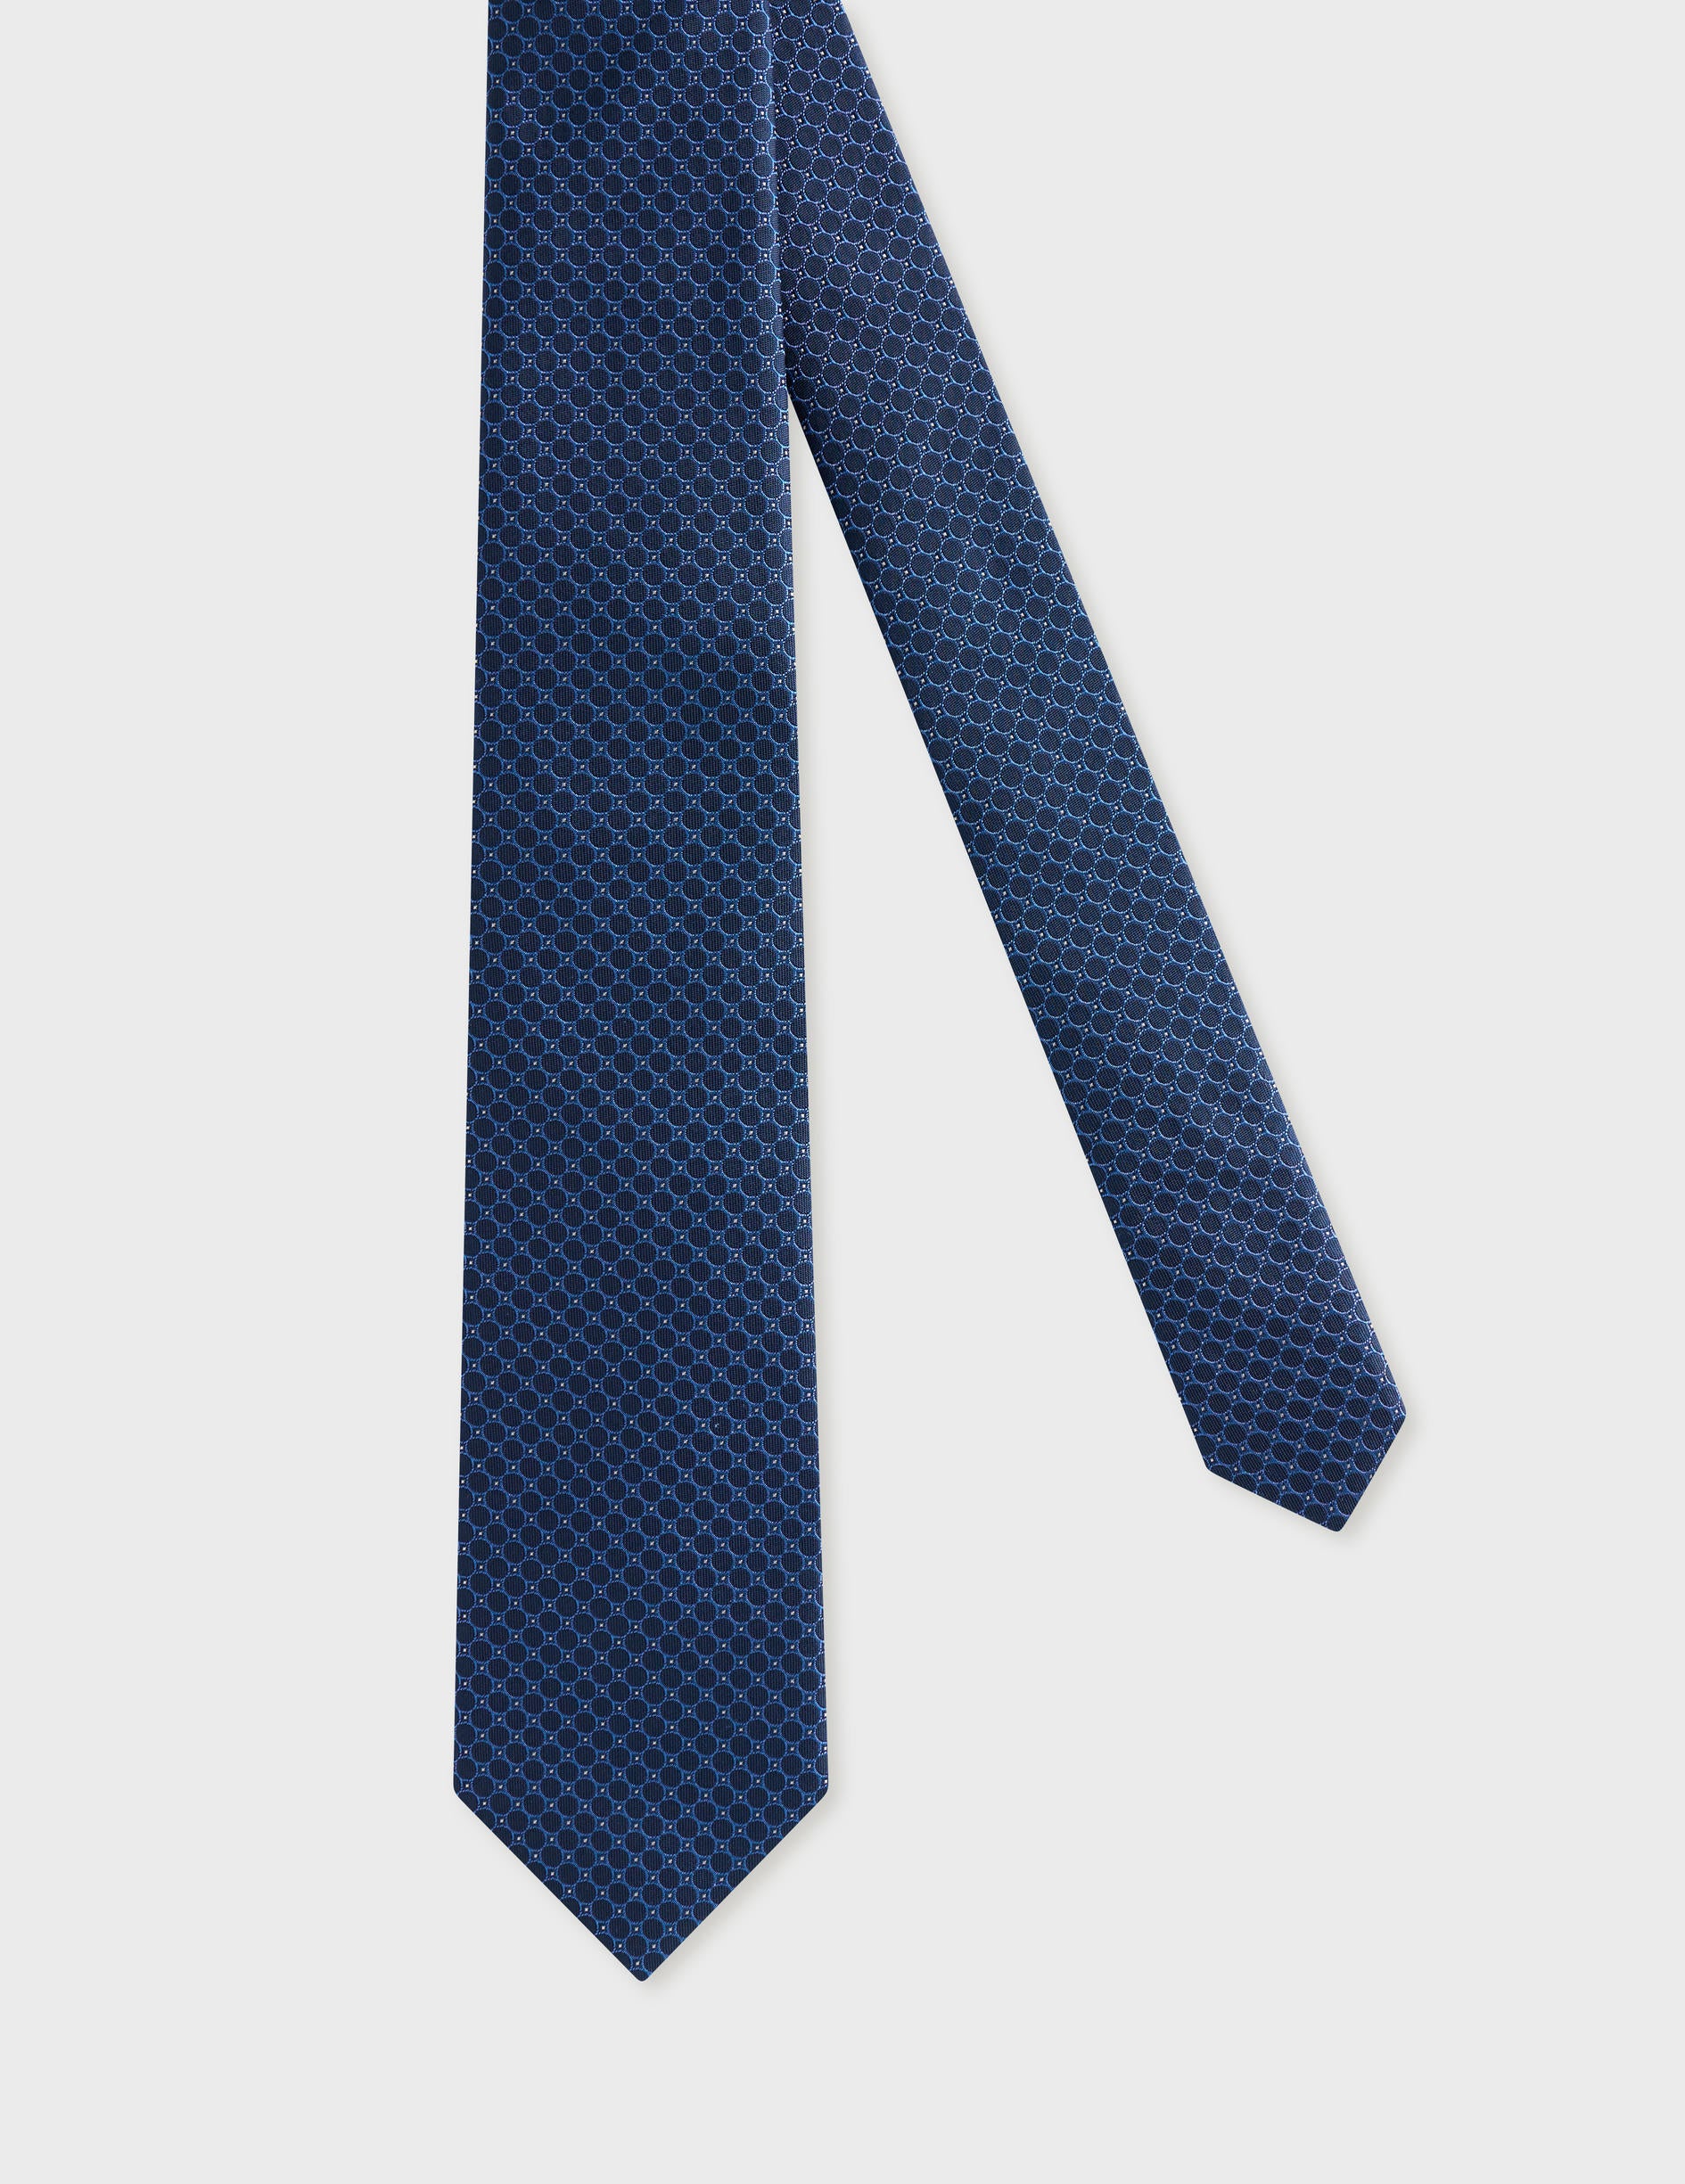 Cravate fine en soie marine à motifs